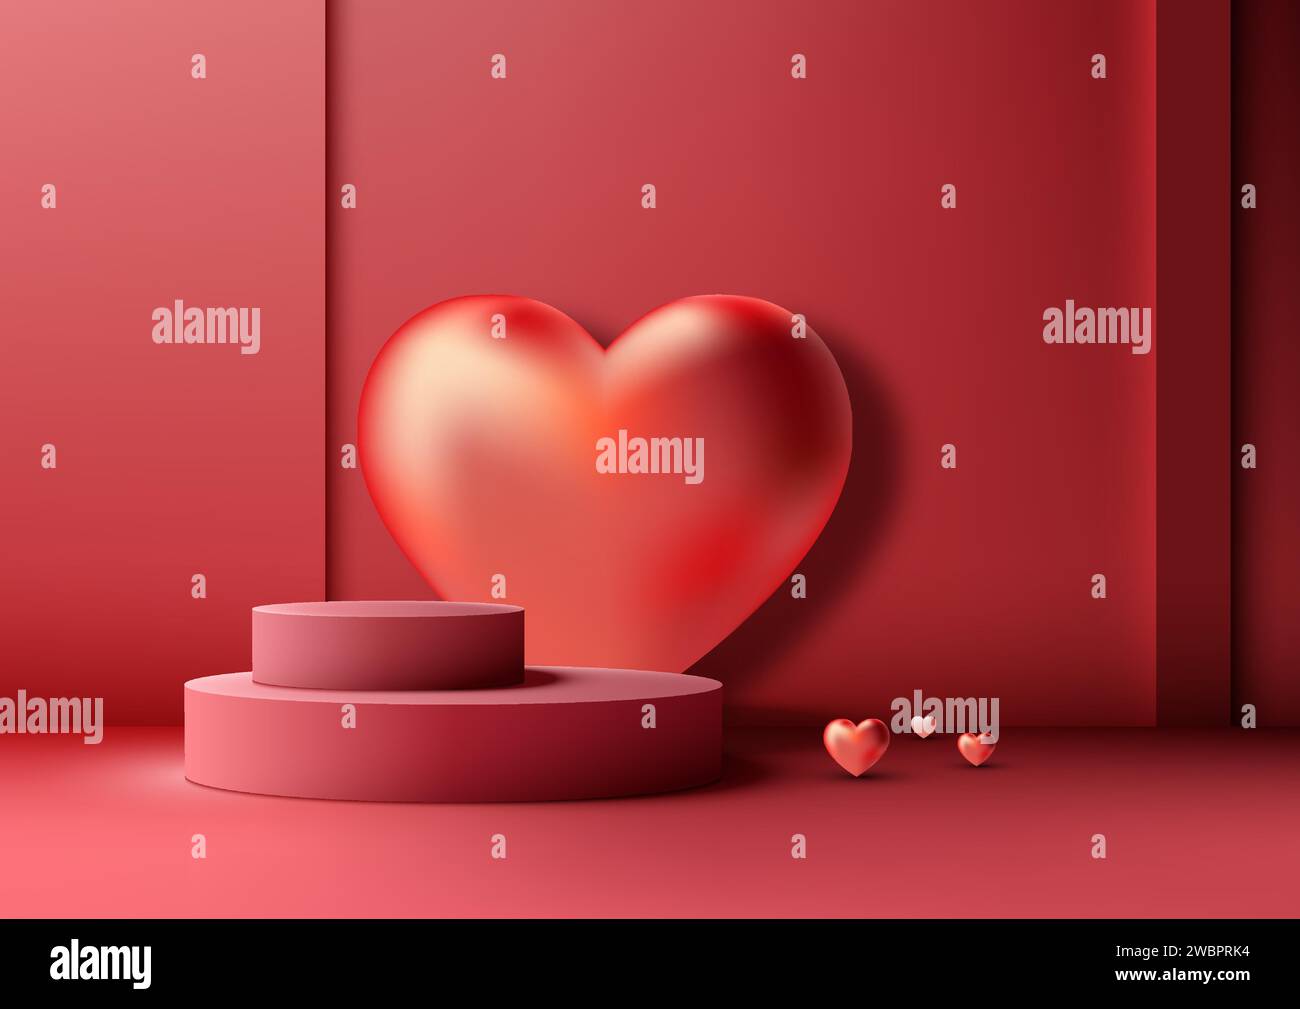 San Valentino con questo modello 3D rosso sul podio. Cuori con sfondo lucido, perfetto per mostrare prodotti, marchi o messaggi romantici. Vettore Illustrazione Vettoriale